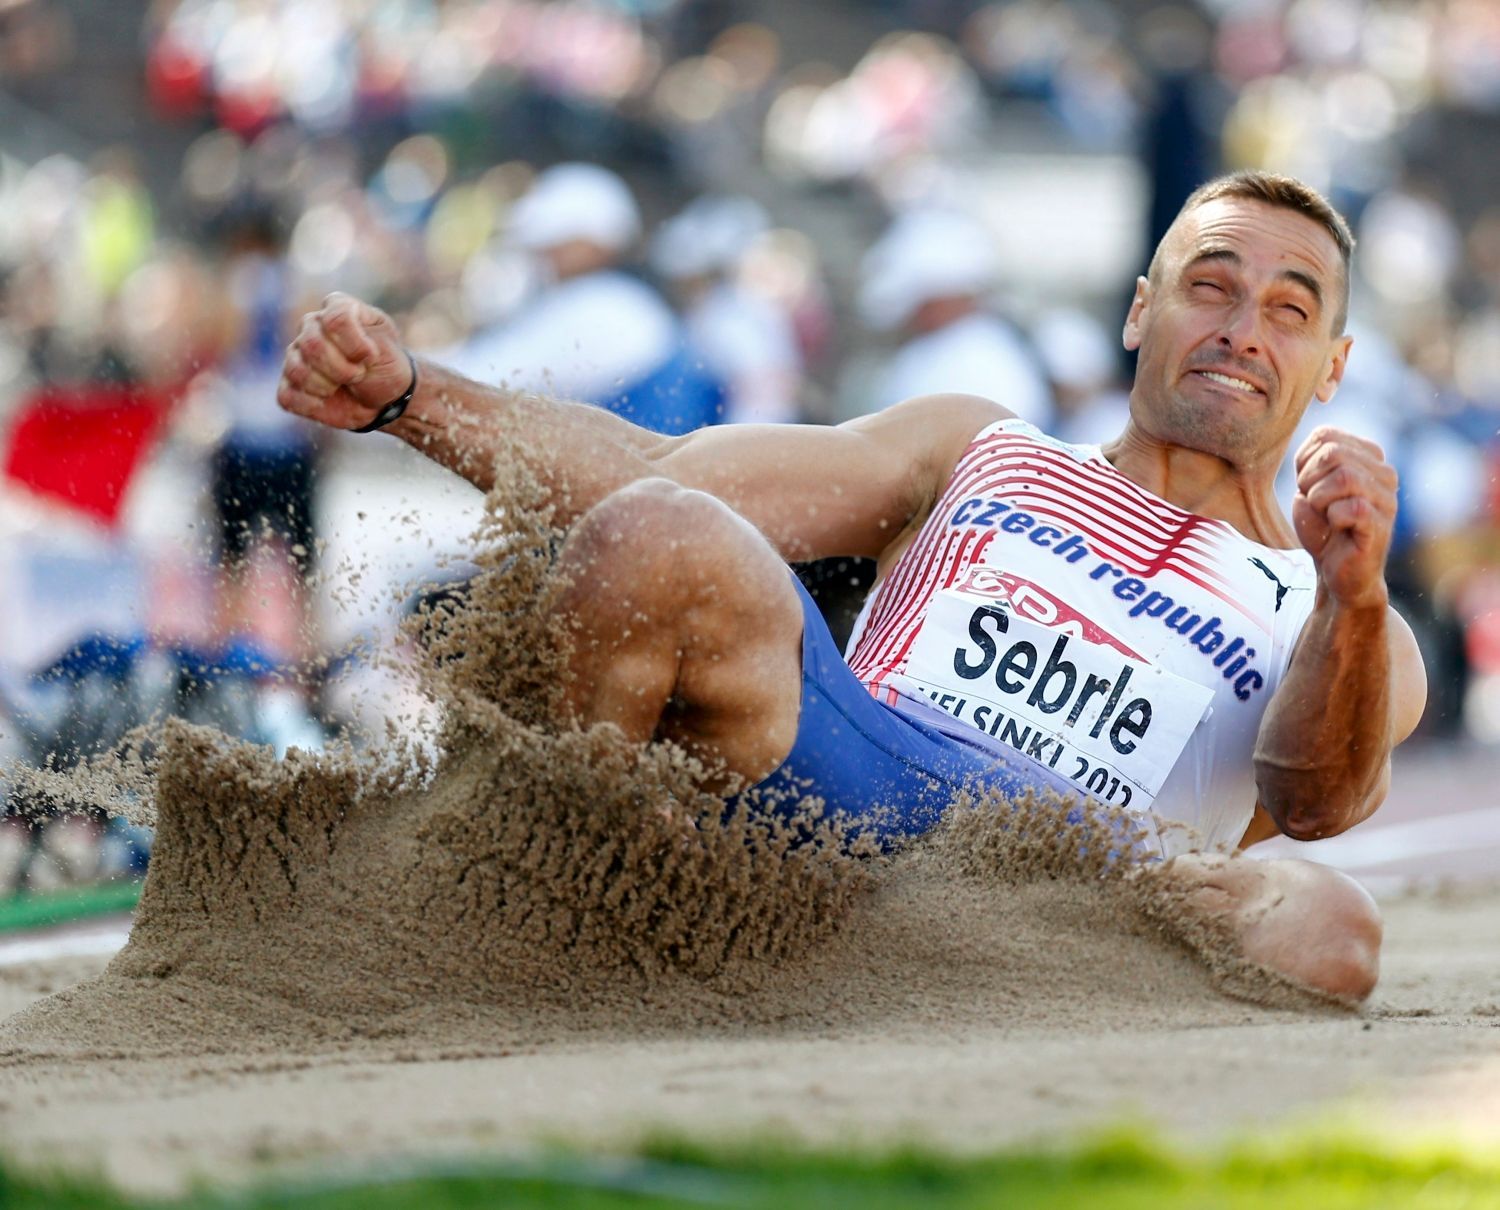 Desetibojař Roman Šebrle doskakuje během Mistrovství Evropy v atletice 2012 v Helsinkách.